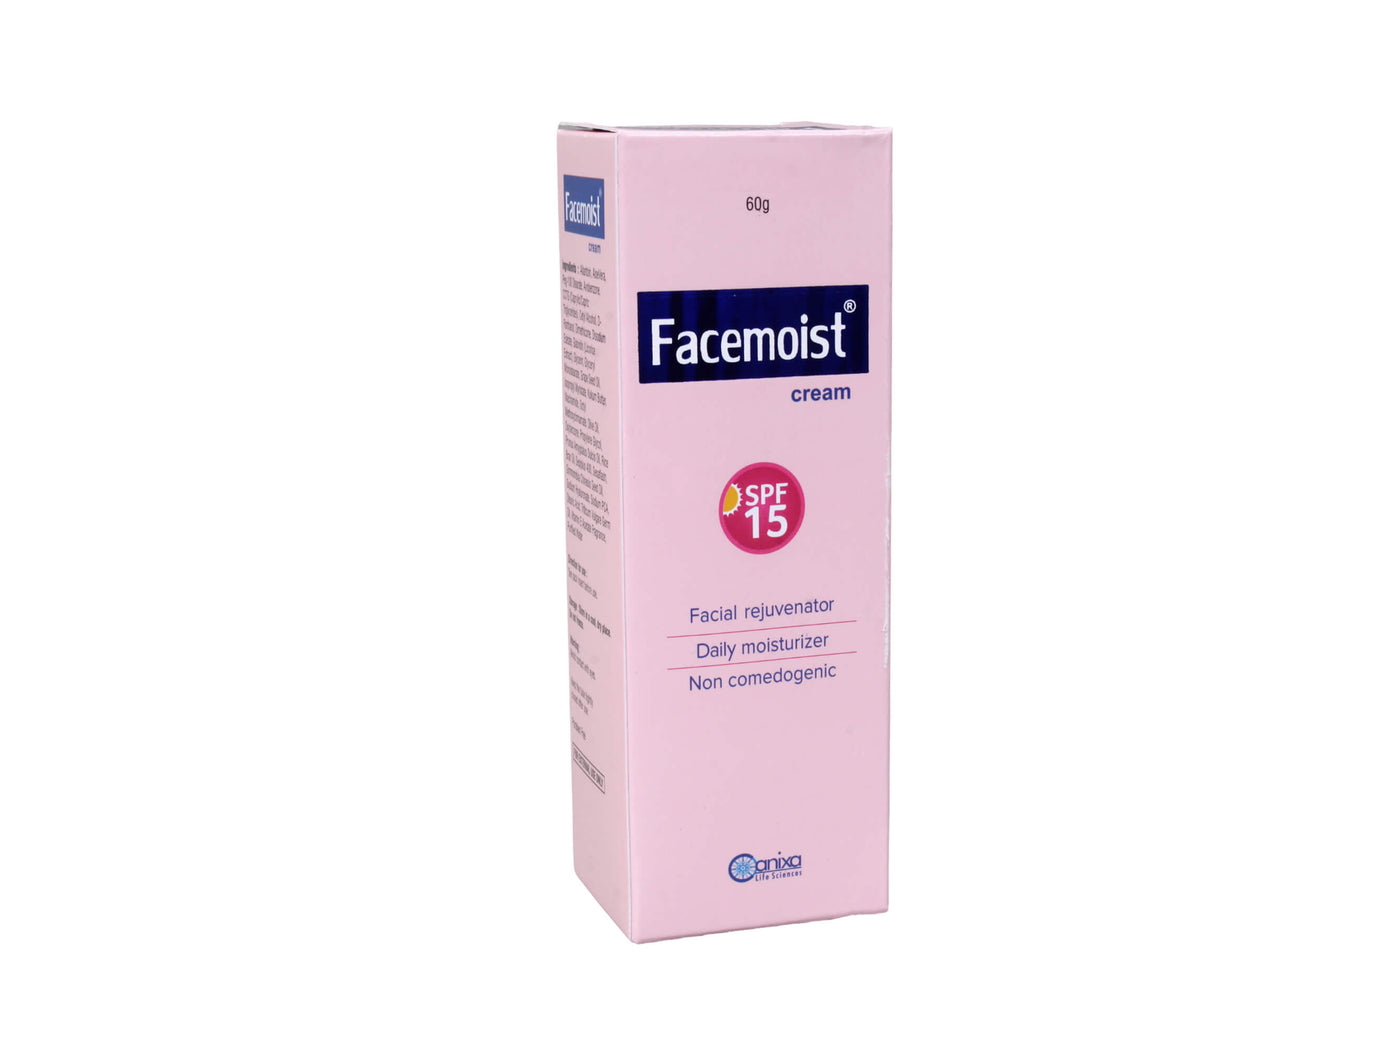 Facemoist SPF 15 Cream - Clinikally